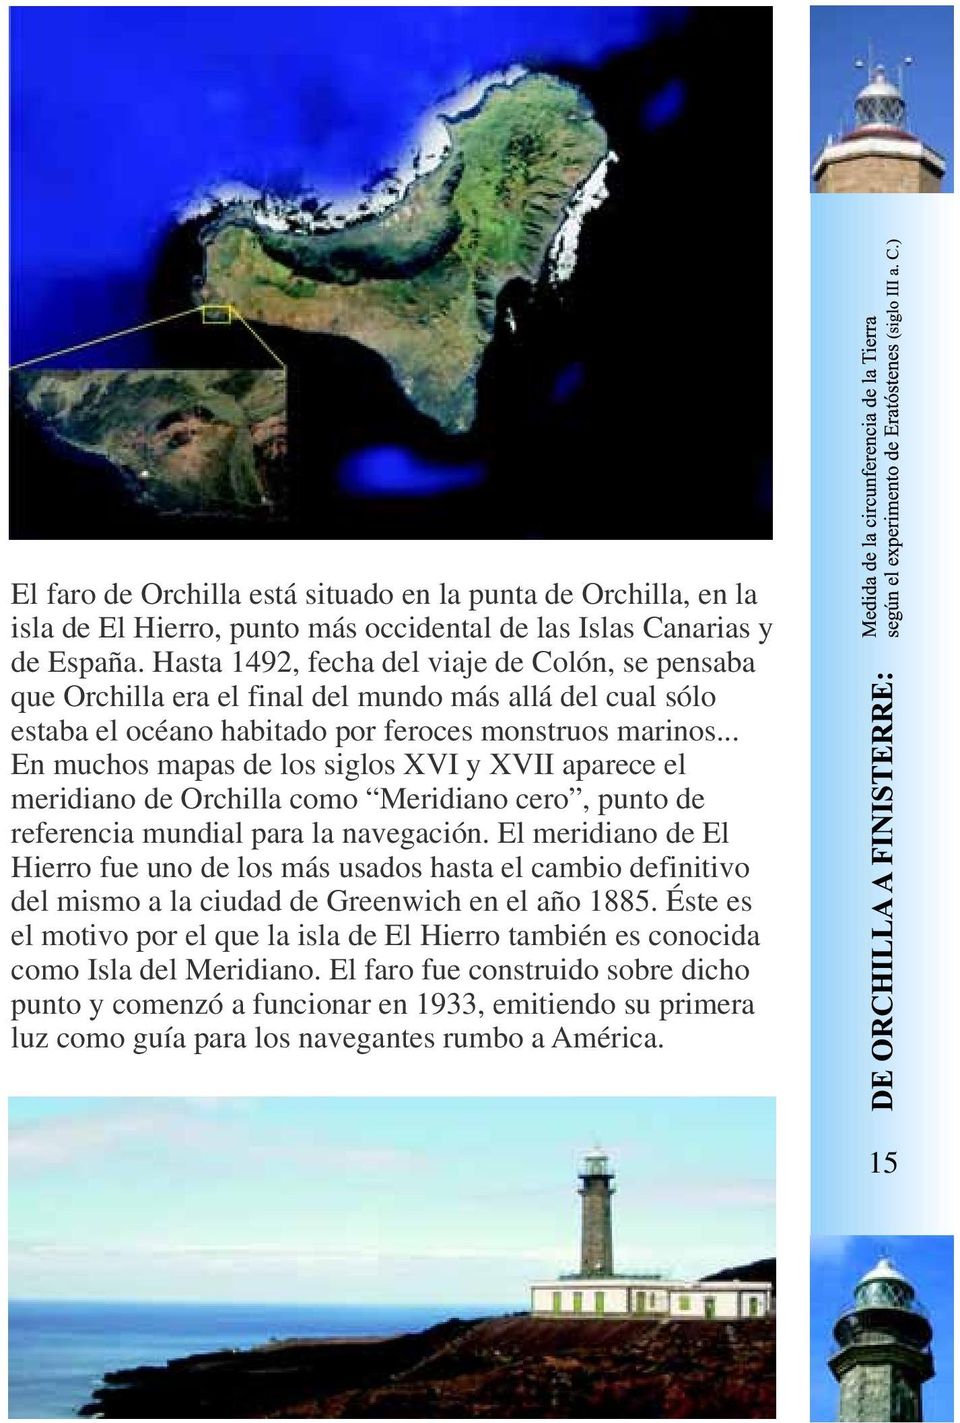 .. En muchos mapas de los siglos XVI y XVII aparece el meridiano de Orchilla como Meridiano cero, punto de referencia mundial para la navegación.